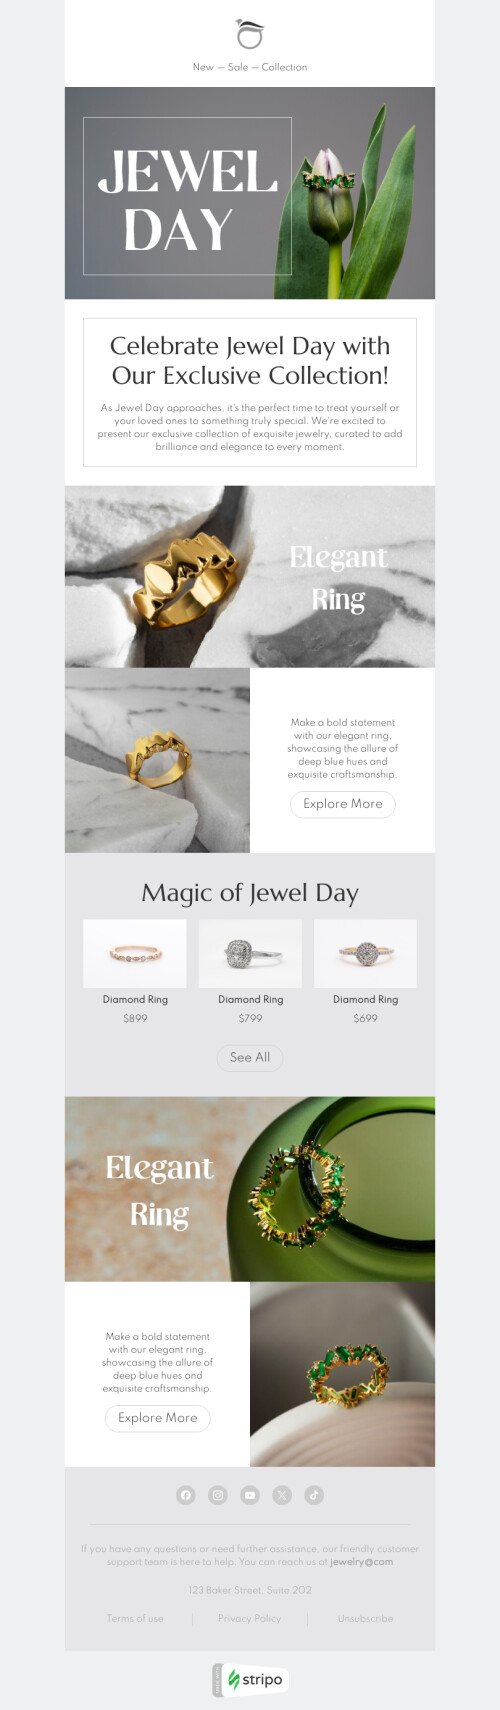 Juwelen Tag E-Mail-Vorlage «Eleganter Ring» für schmuck-Branche Ansicht auf Mobilgeräten